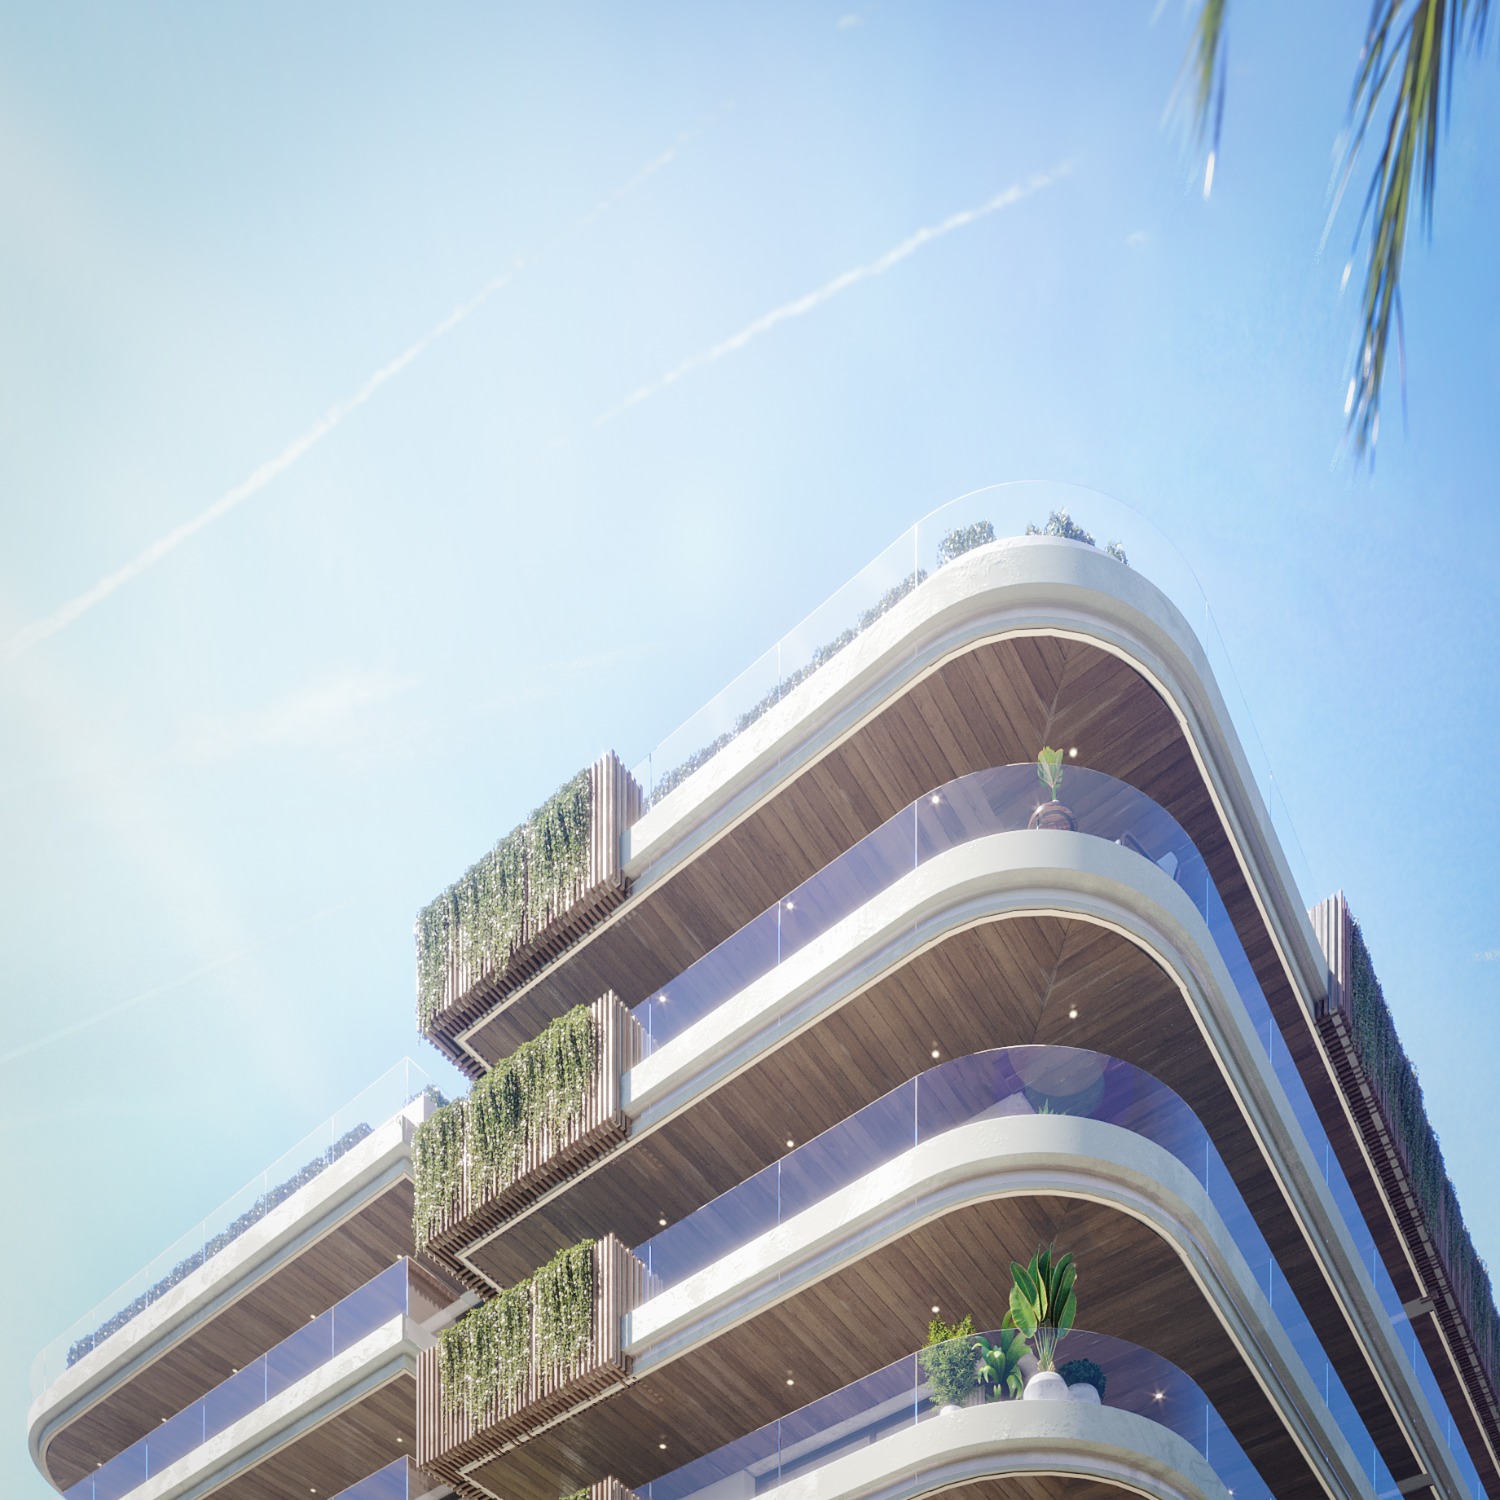 116 appartements splendides et penthouses de luxe avec garage à 100 mètres de la mer.